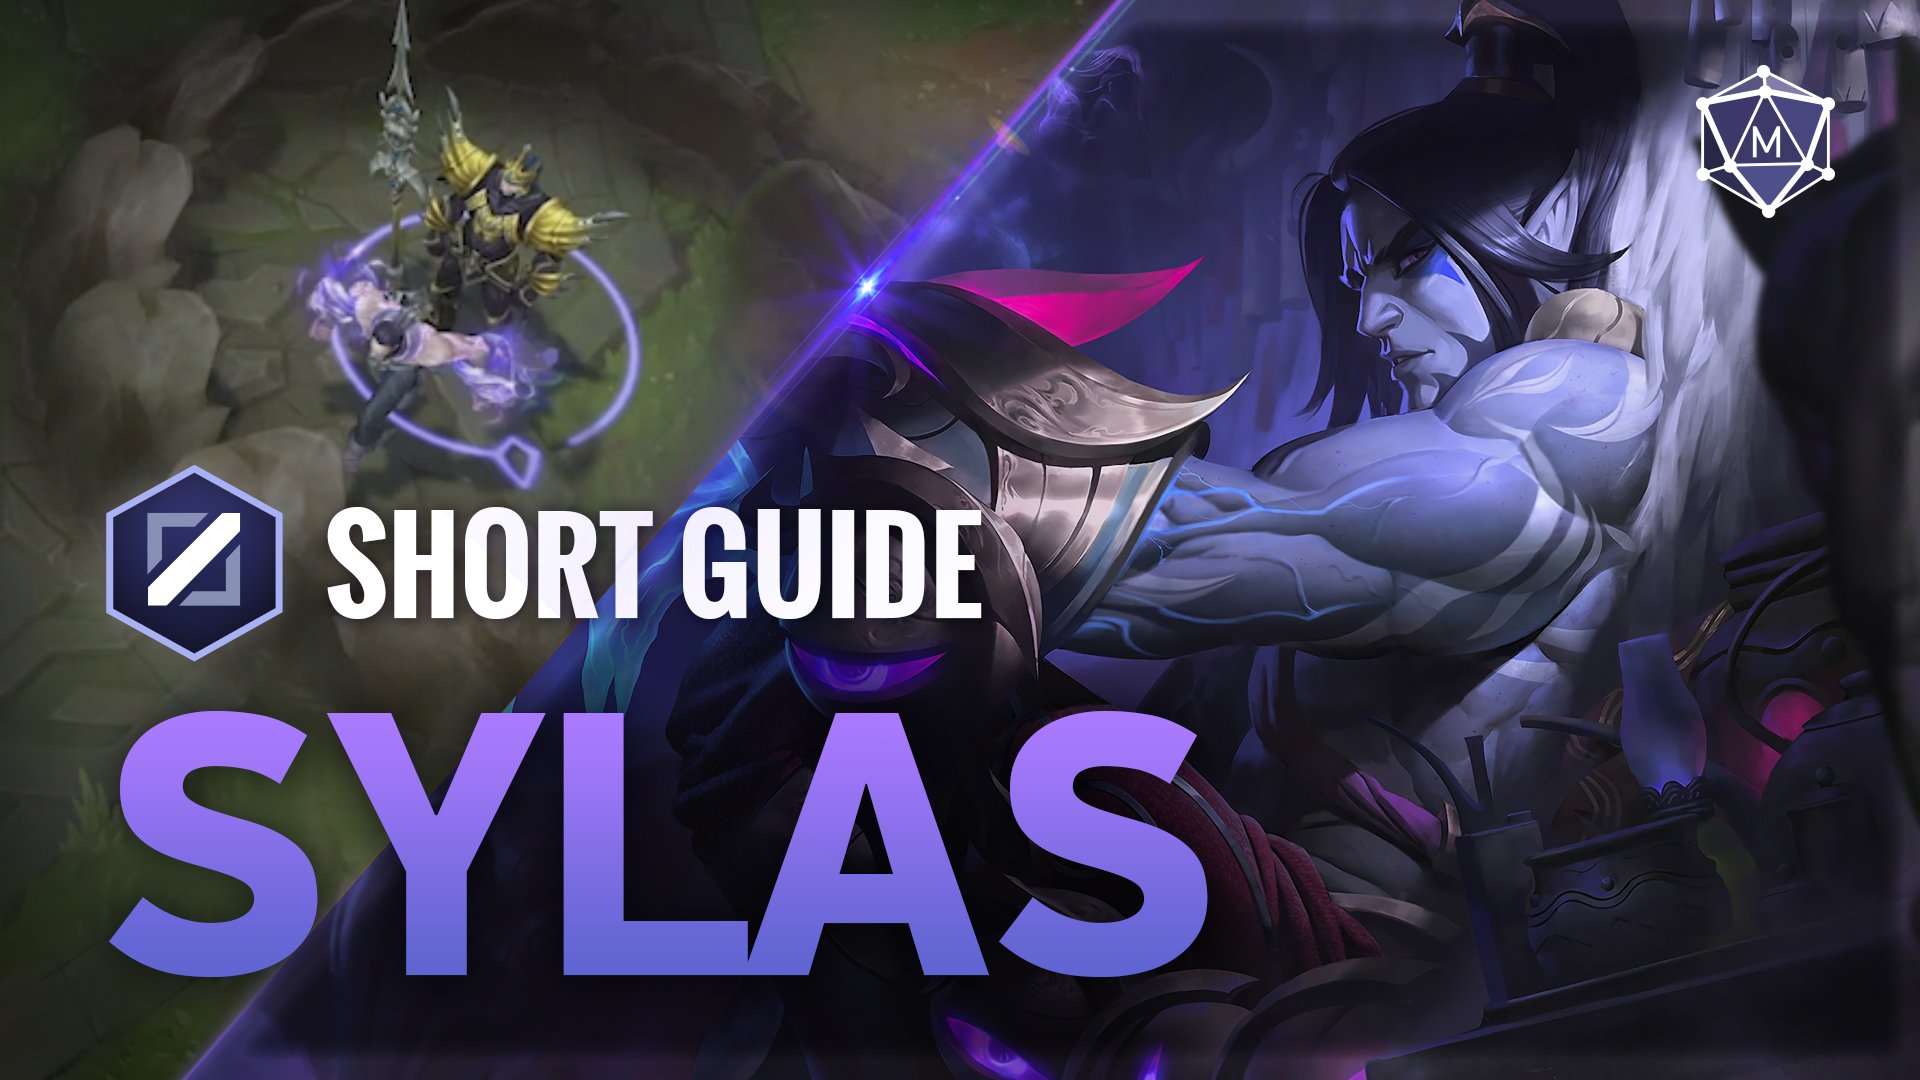 Sylas expert guide